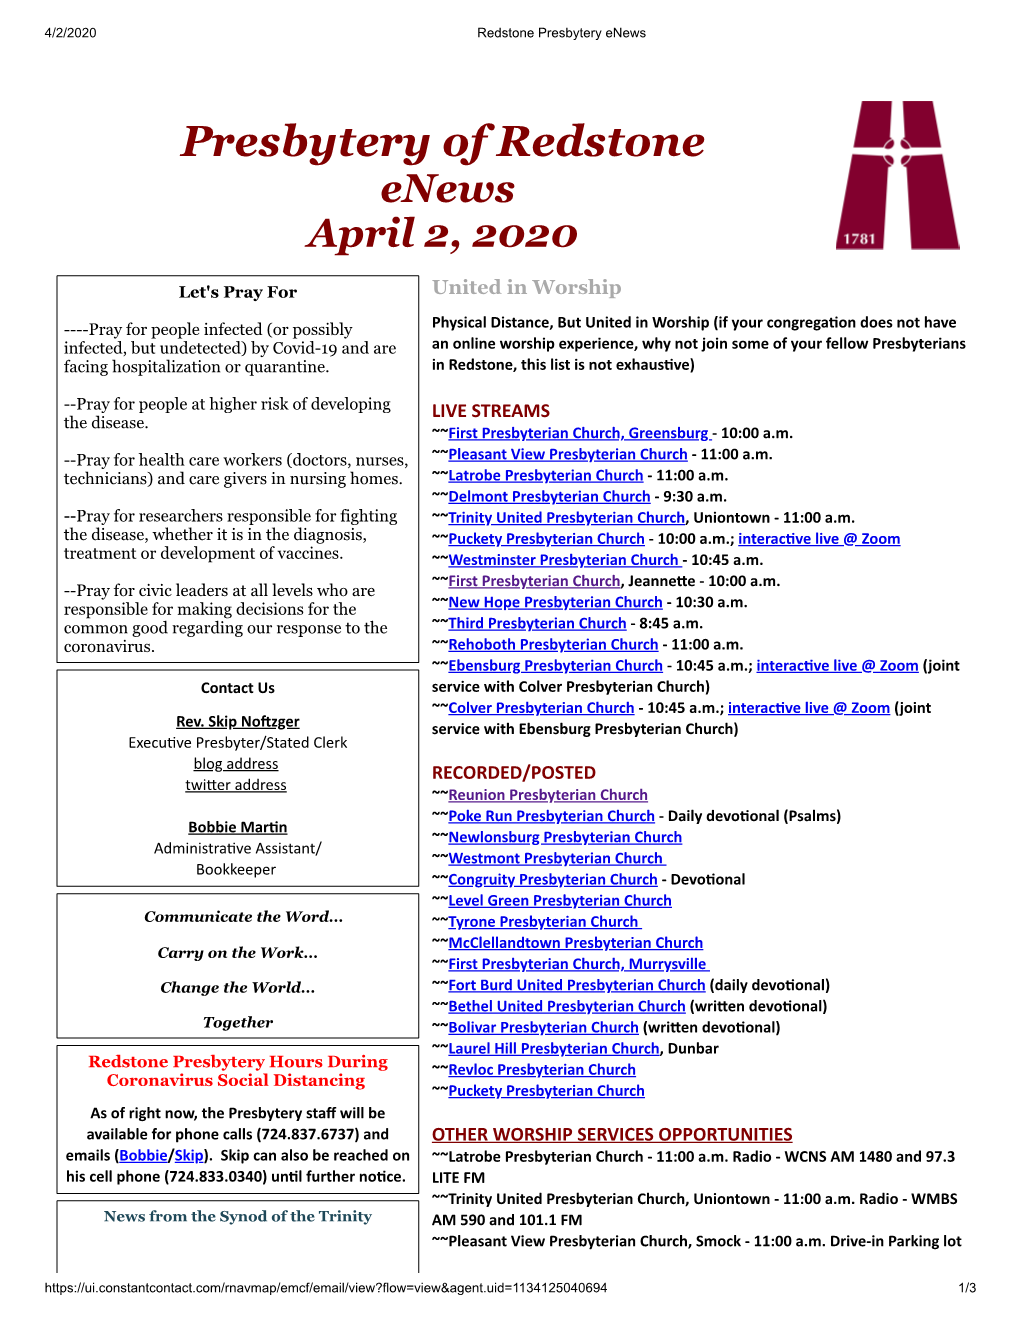 Presbytery of Redstone Enews April 2, 2020